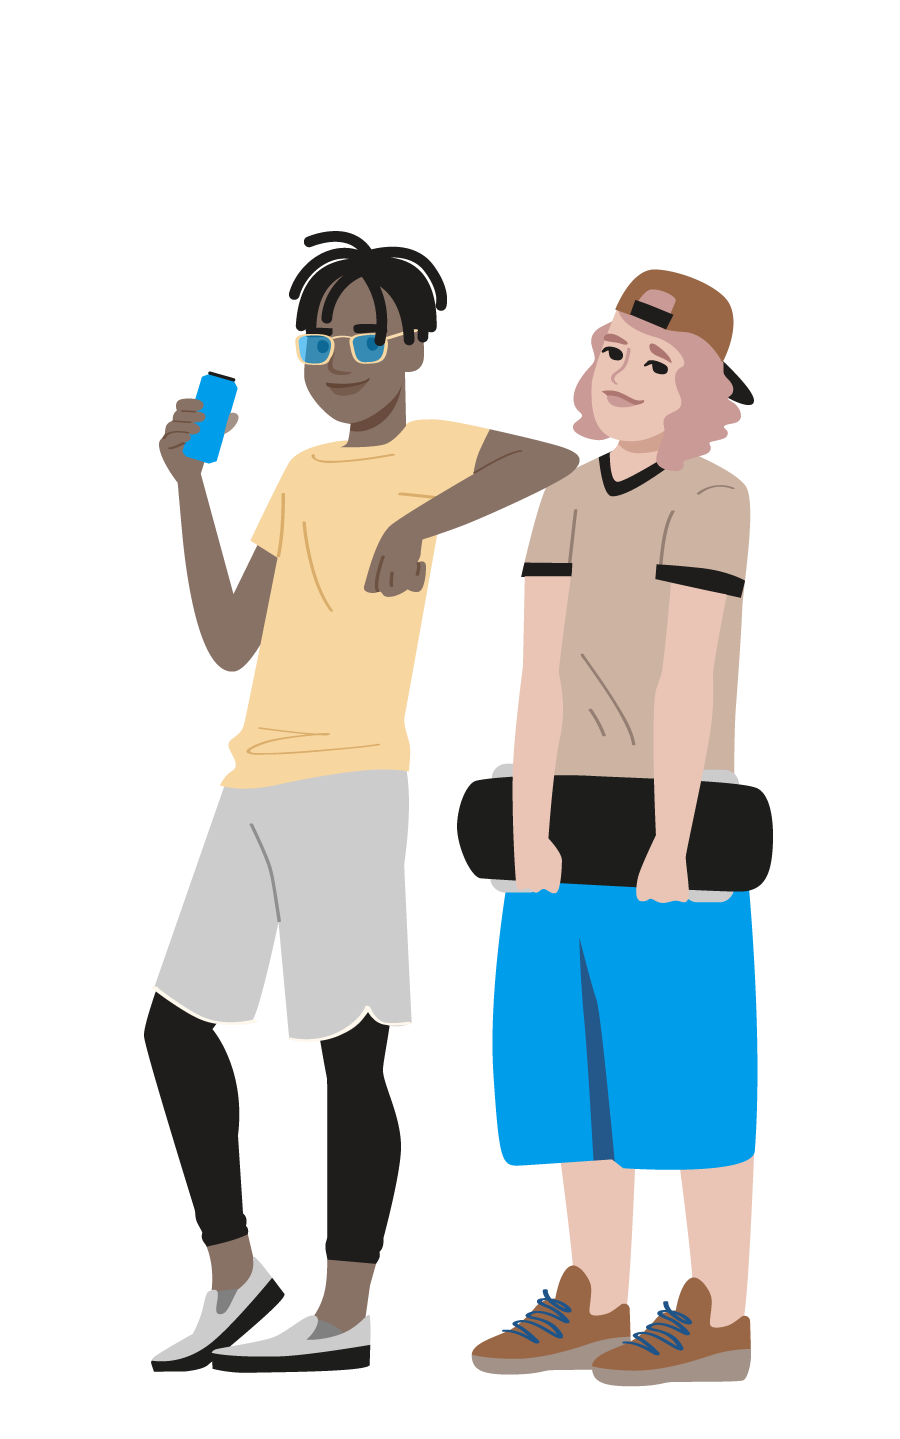 Illustration: zwei stehende, befreundet wirkende Jugendliche, einer mit Getränk in der Hand, der andere mit Skateboard in den Händen.